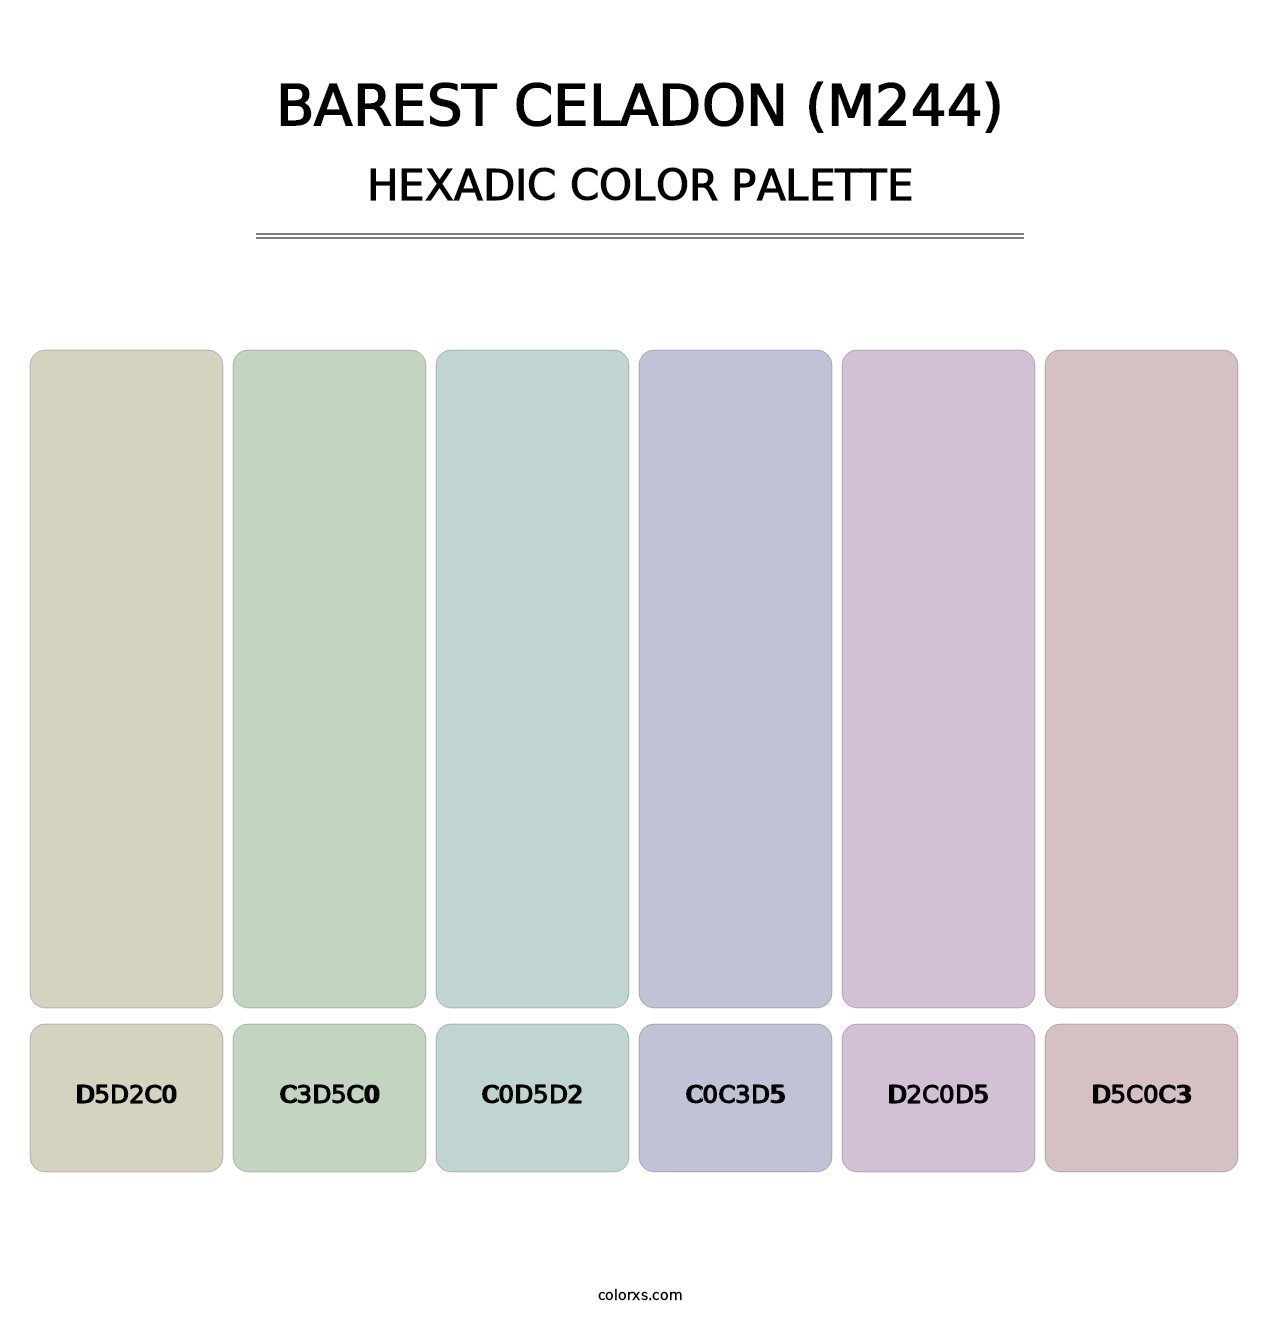 Barest Celadon (M244) - Hexadic Color Palette